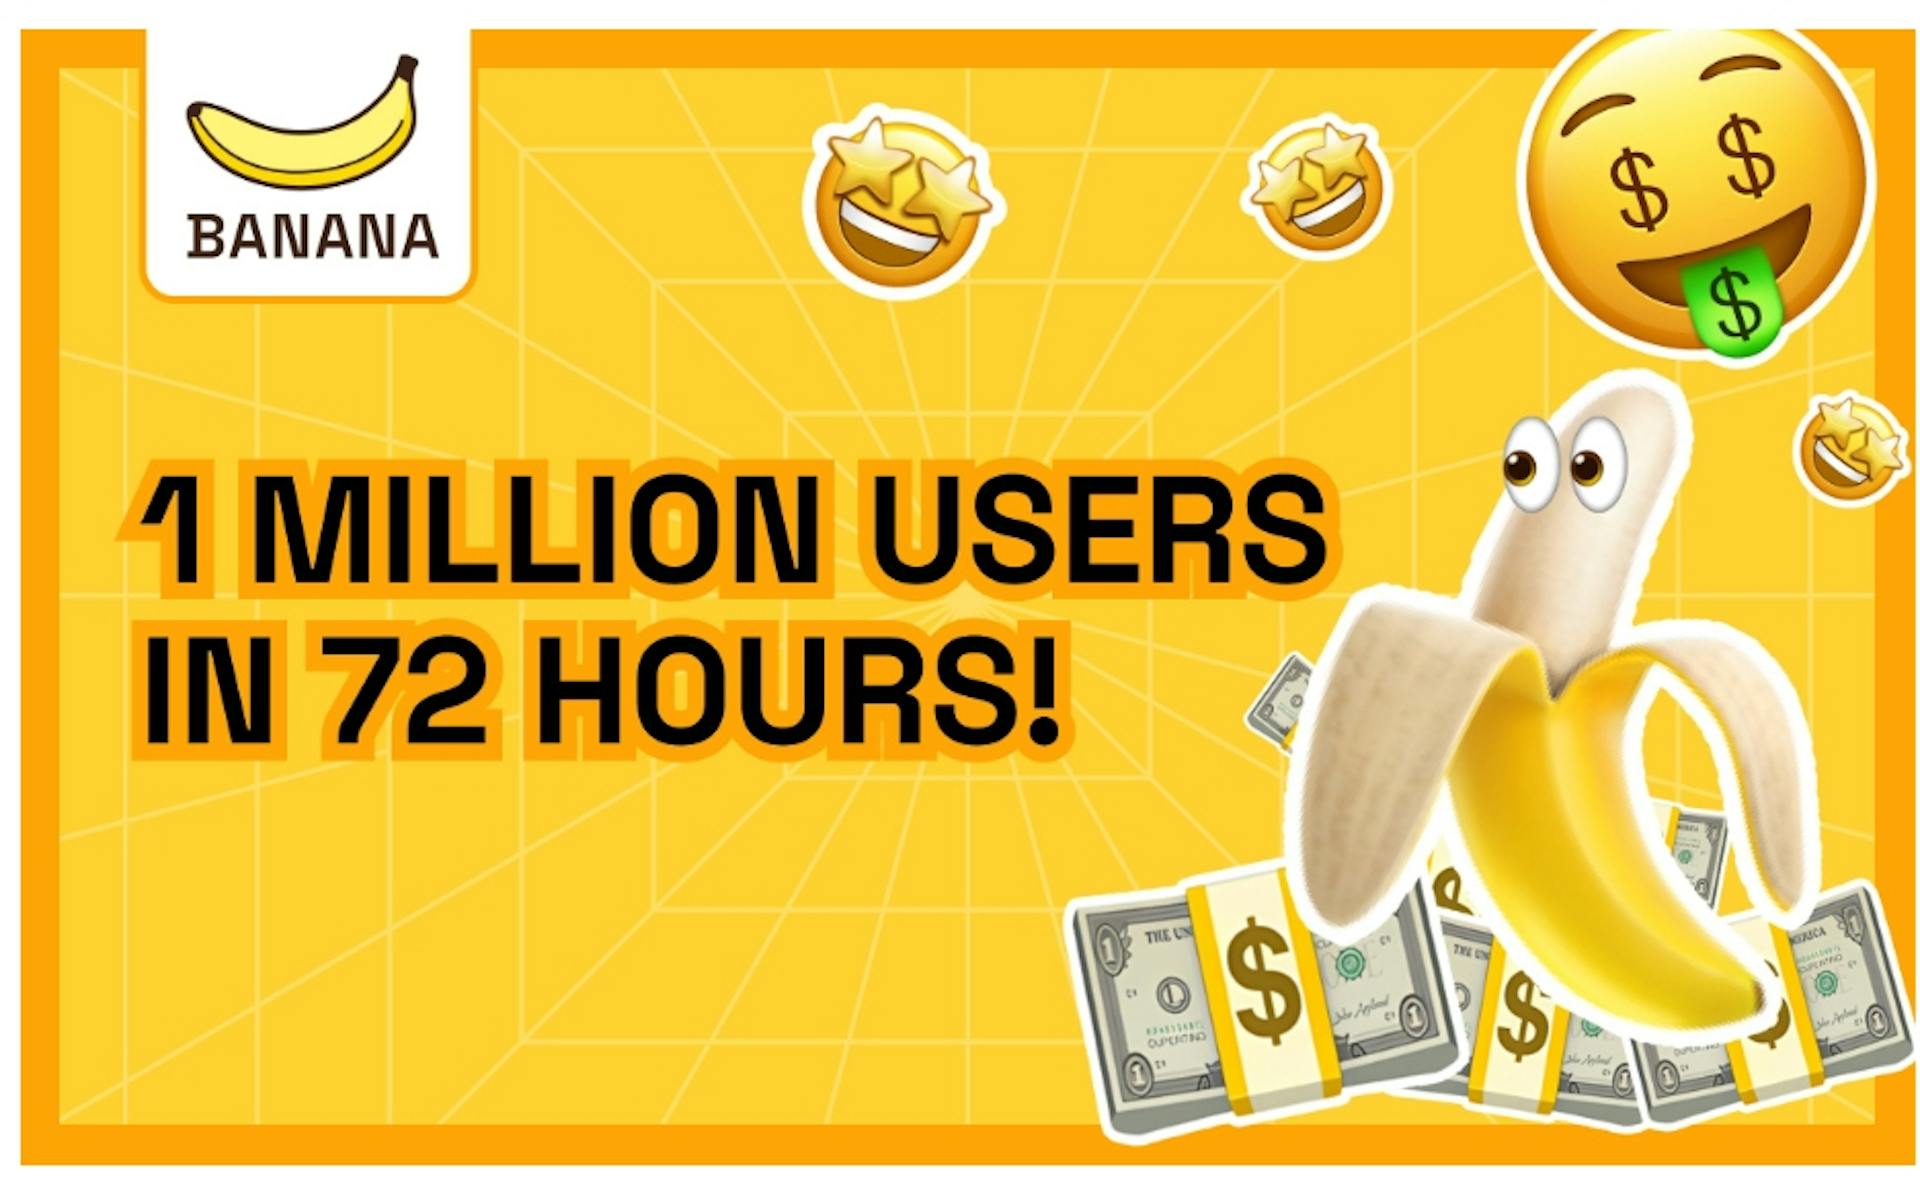 featured image - TON-Spiel „BANANA“ erreicht 1 Million Benutzer in 72 Stunden